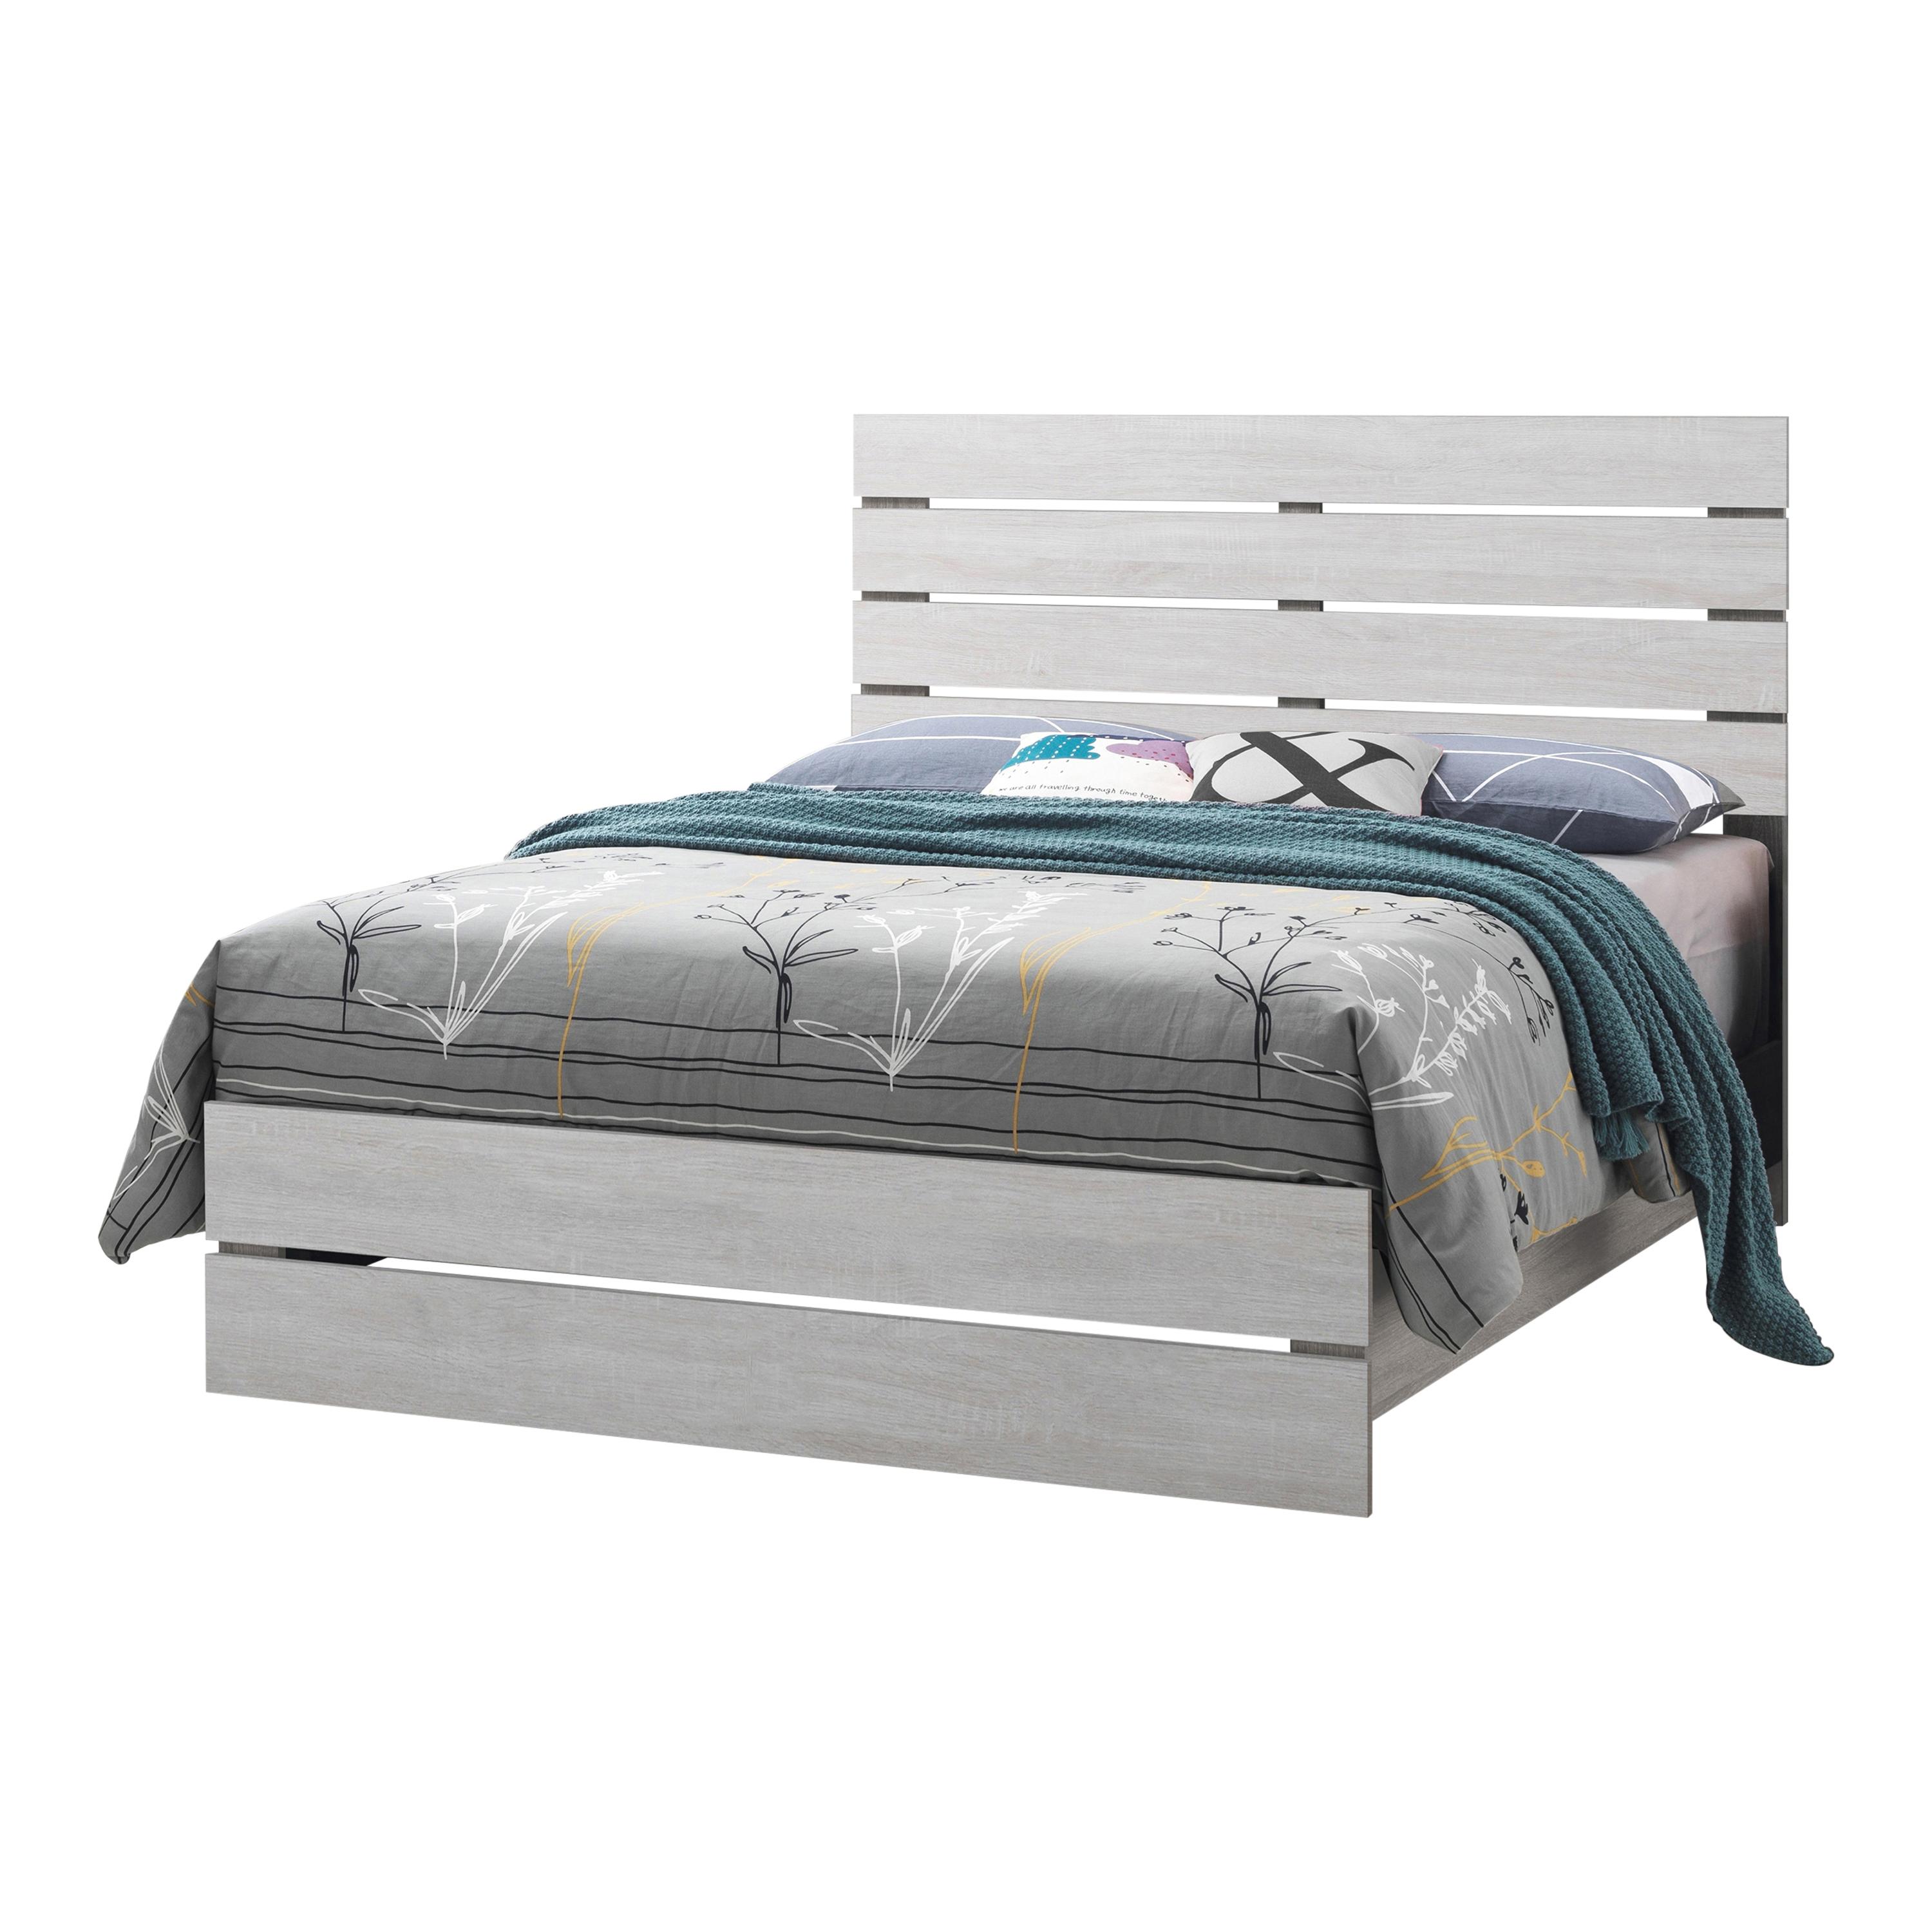 Rustic Bed 207051KE Marion 207051KE in White 